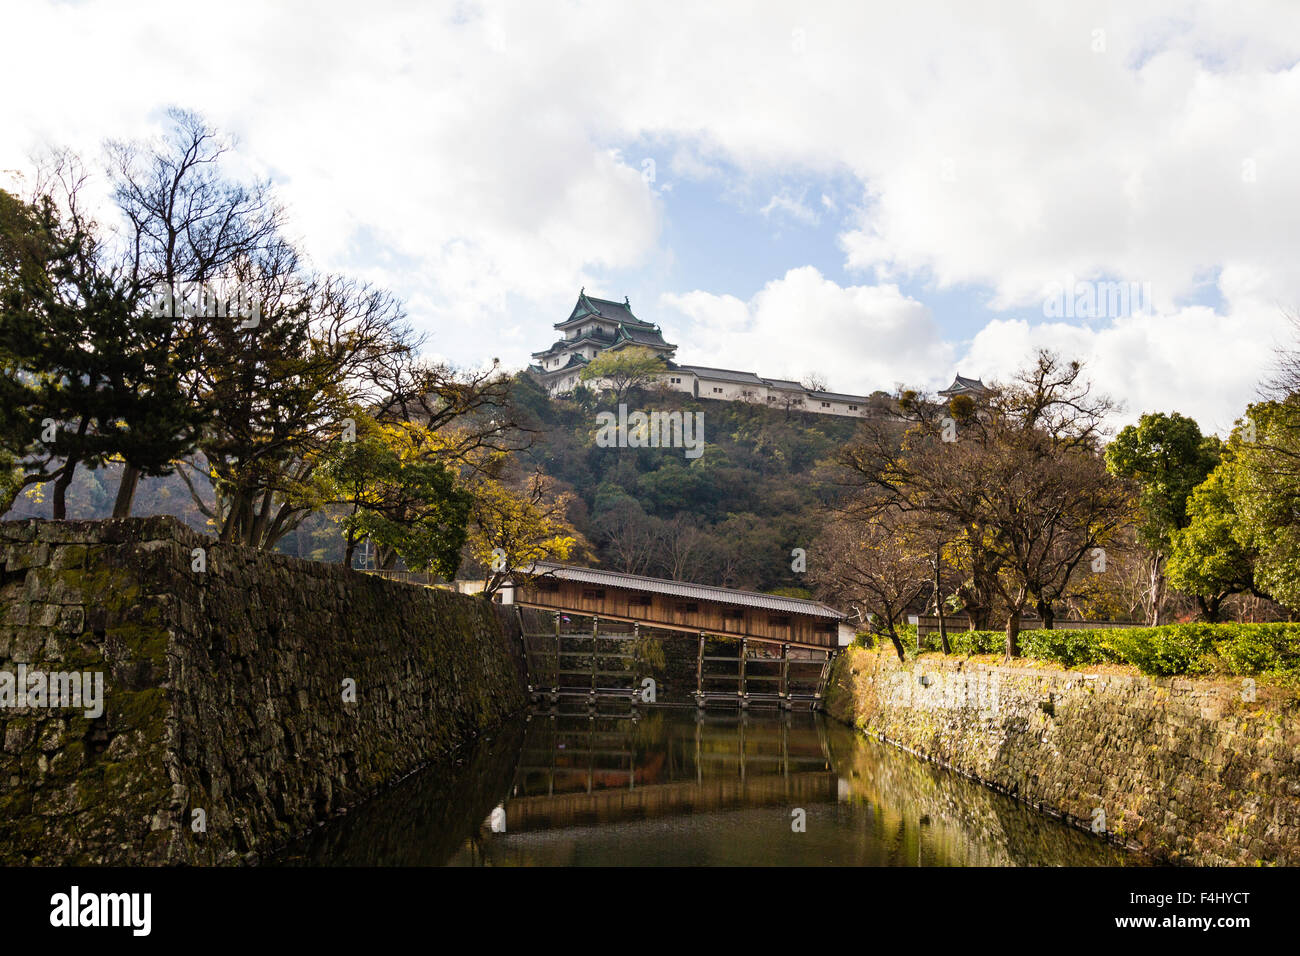 Le Japon, château de Wakayama. Ohashiroka, pont reconstruit un rare exemple d'un pont au clos couvert fossé, se garder d'une colline en arrière-plan. Banque D'Images